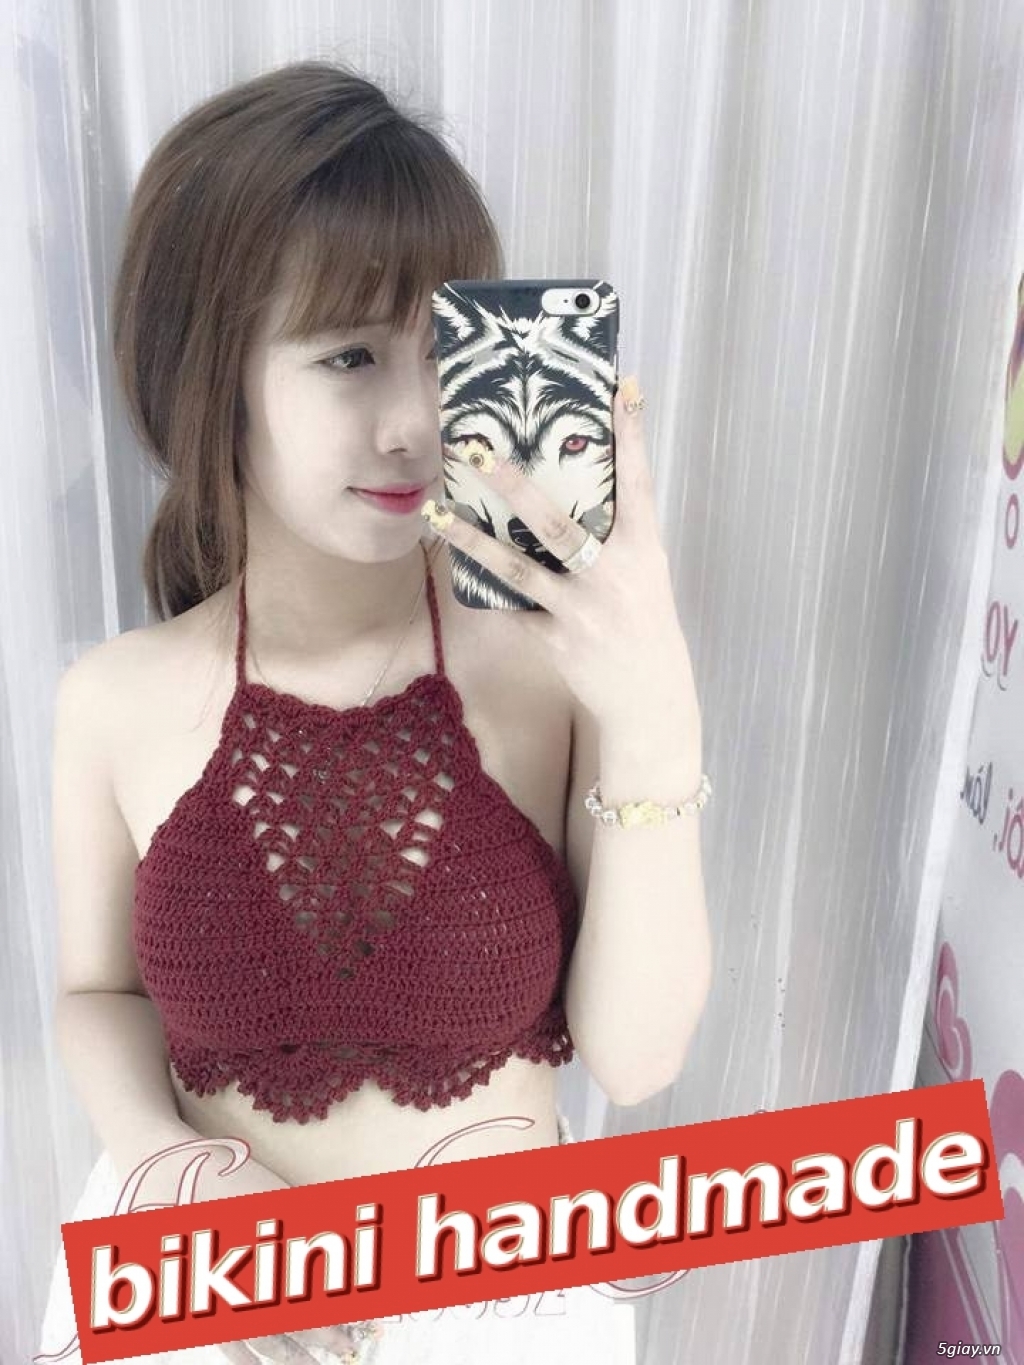 Xưởng chuyên sỉ lẻ bikini len móc handmade đẹp nhất Việt Nam - 2